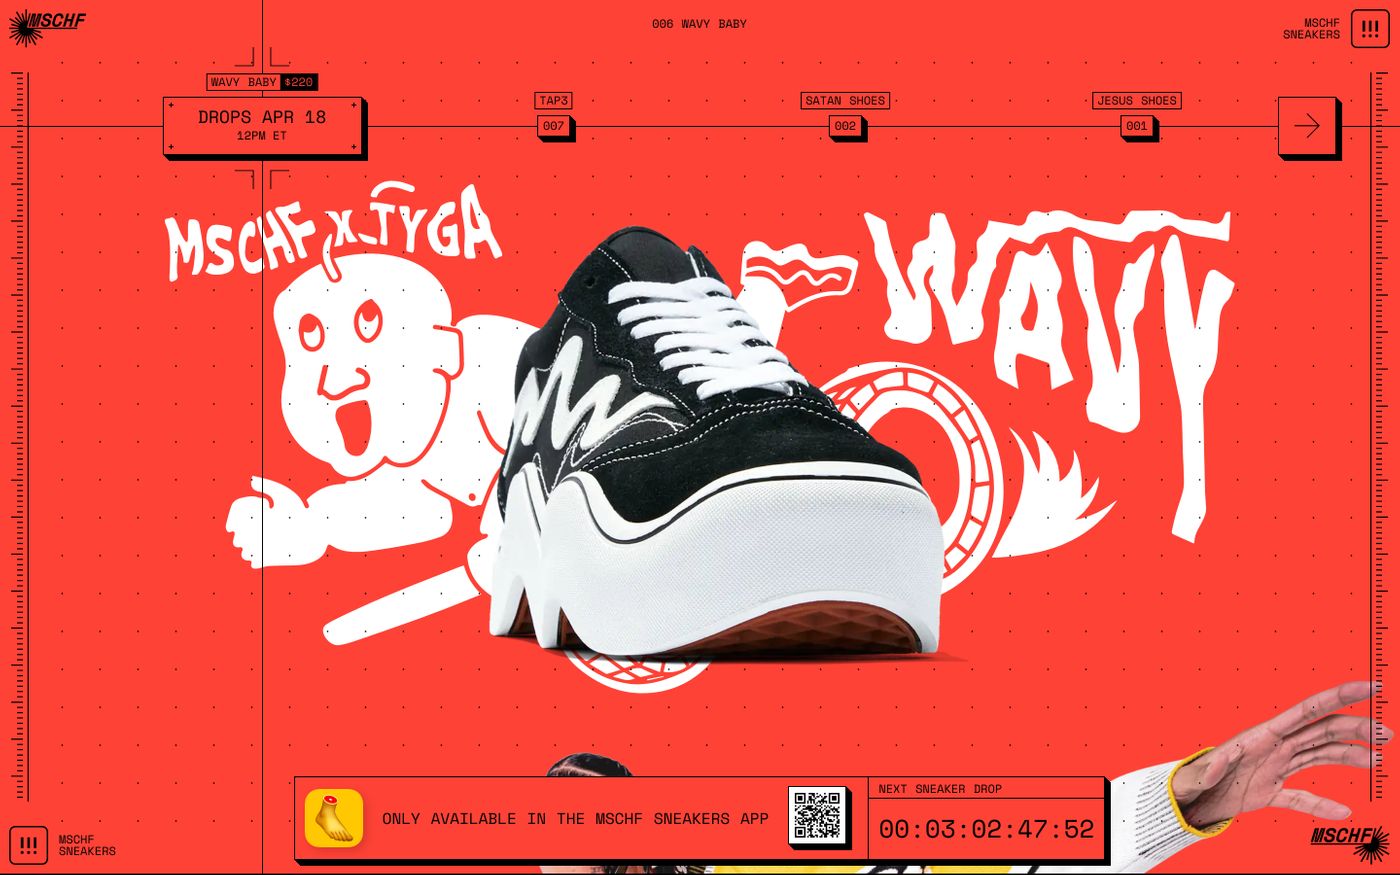 Screenshot of MSCHF sneakers website